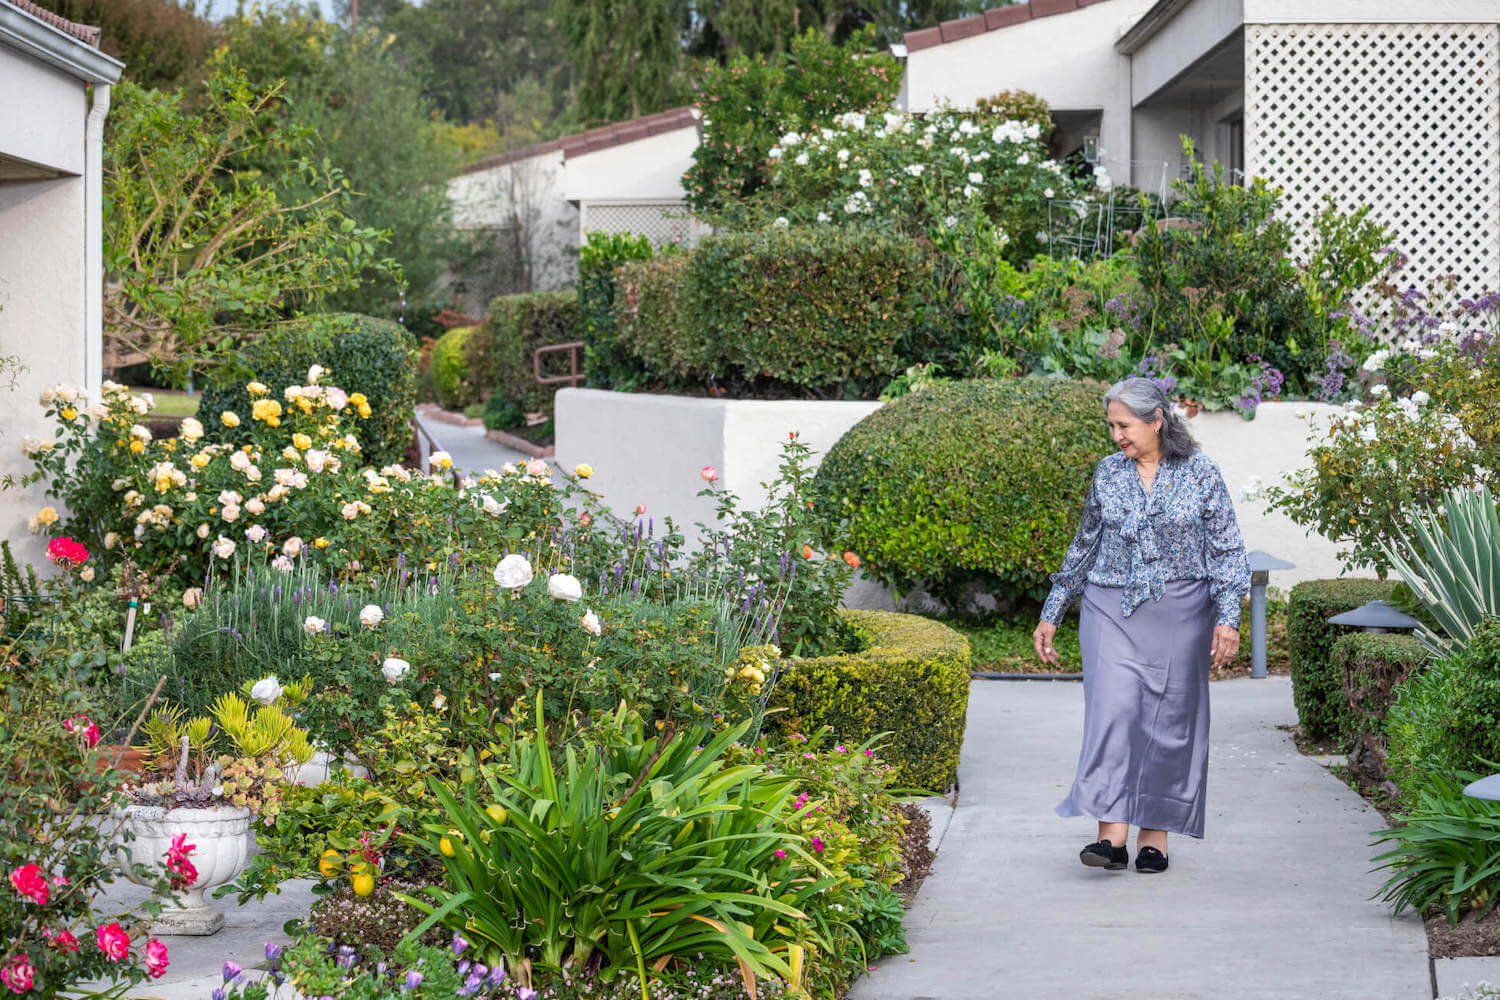 Senior woman walking through an outdoor garden